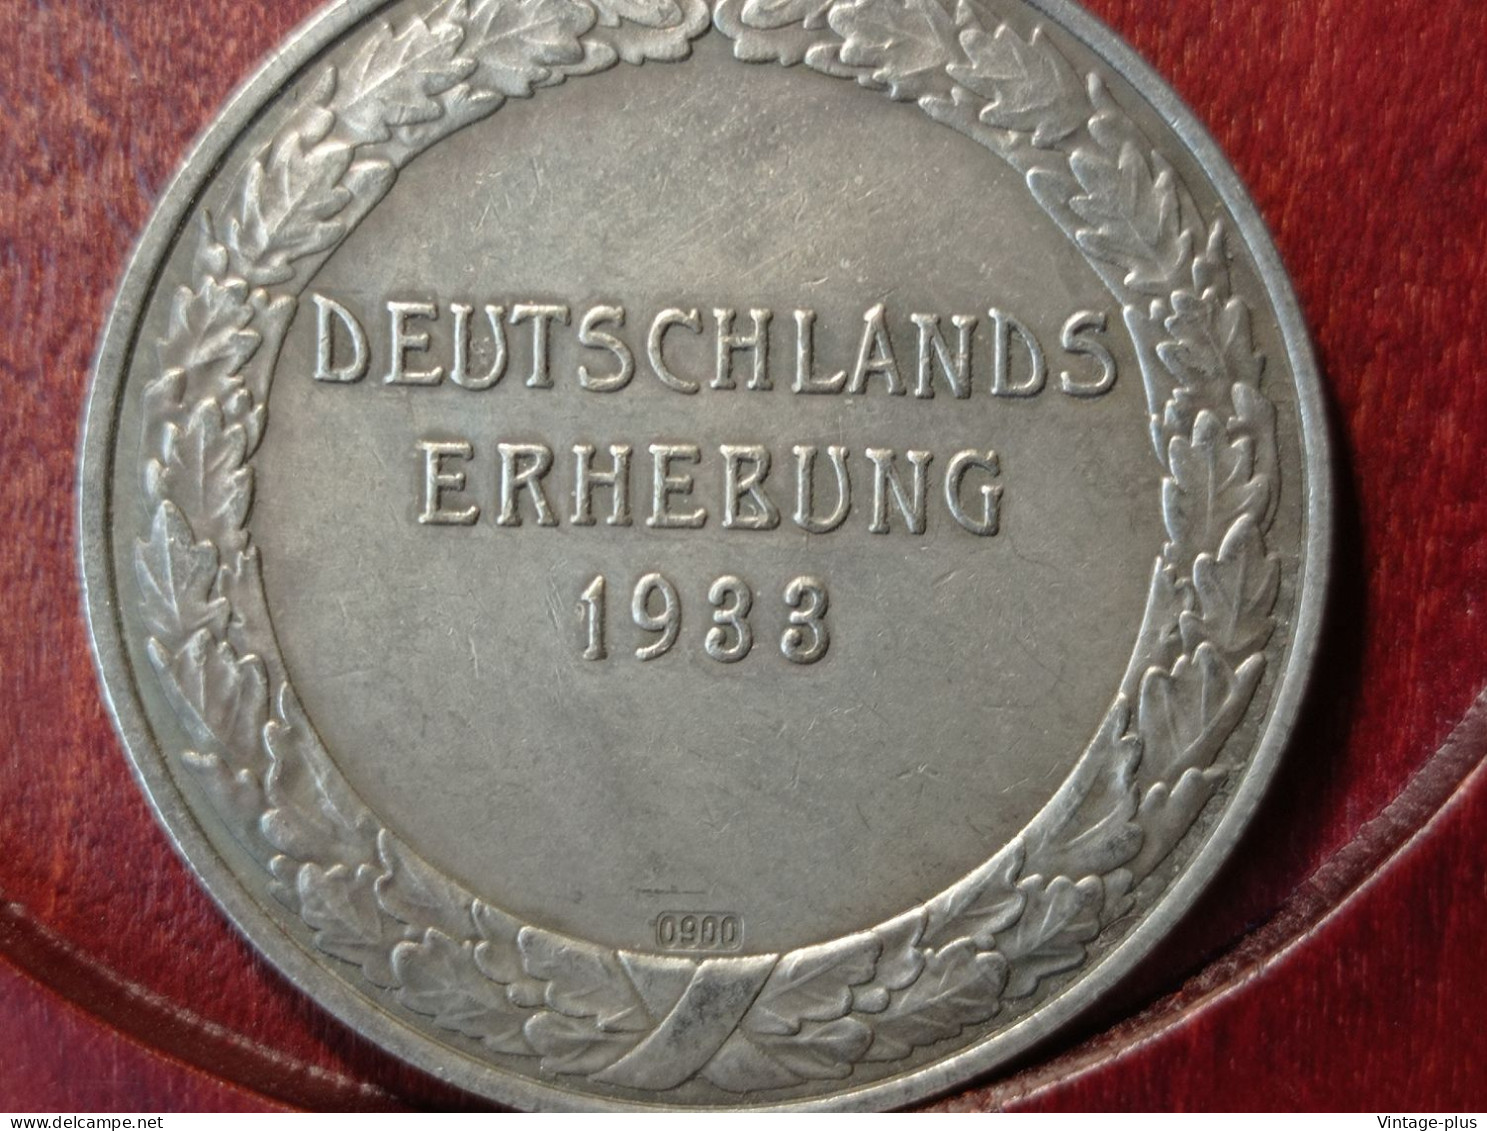 GERMANIA 3° REICH MONETA COMMEMORATIVA DEUTSCHLANDS ERHEBUNG1933 HITLER HINDENBURG  - ALLEMAGNE - DEUTSCHLAND - COD:AB8 - Autres – Europe